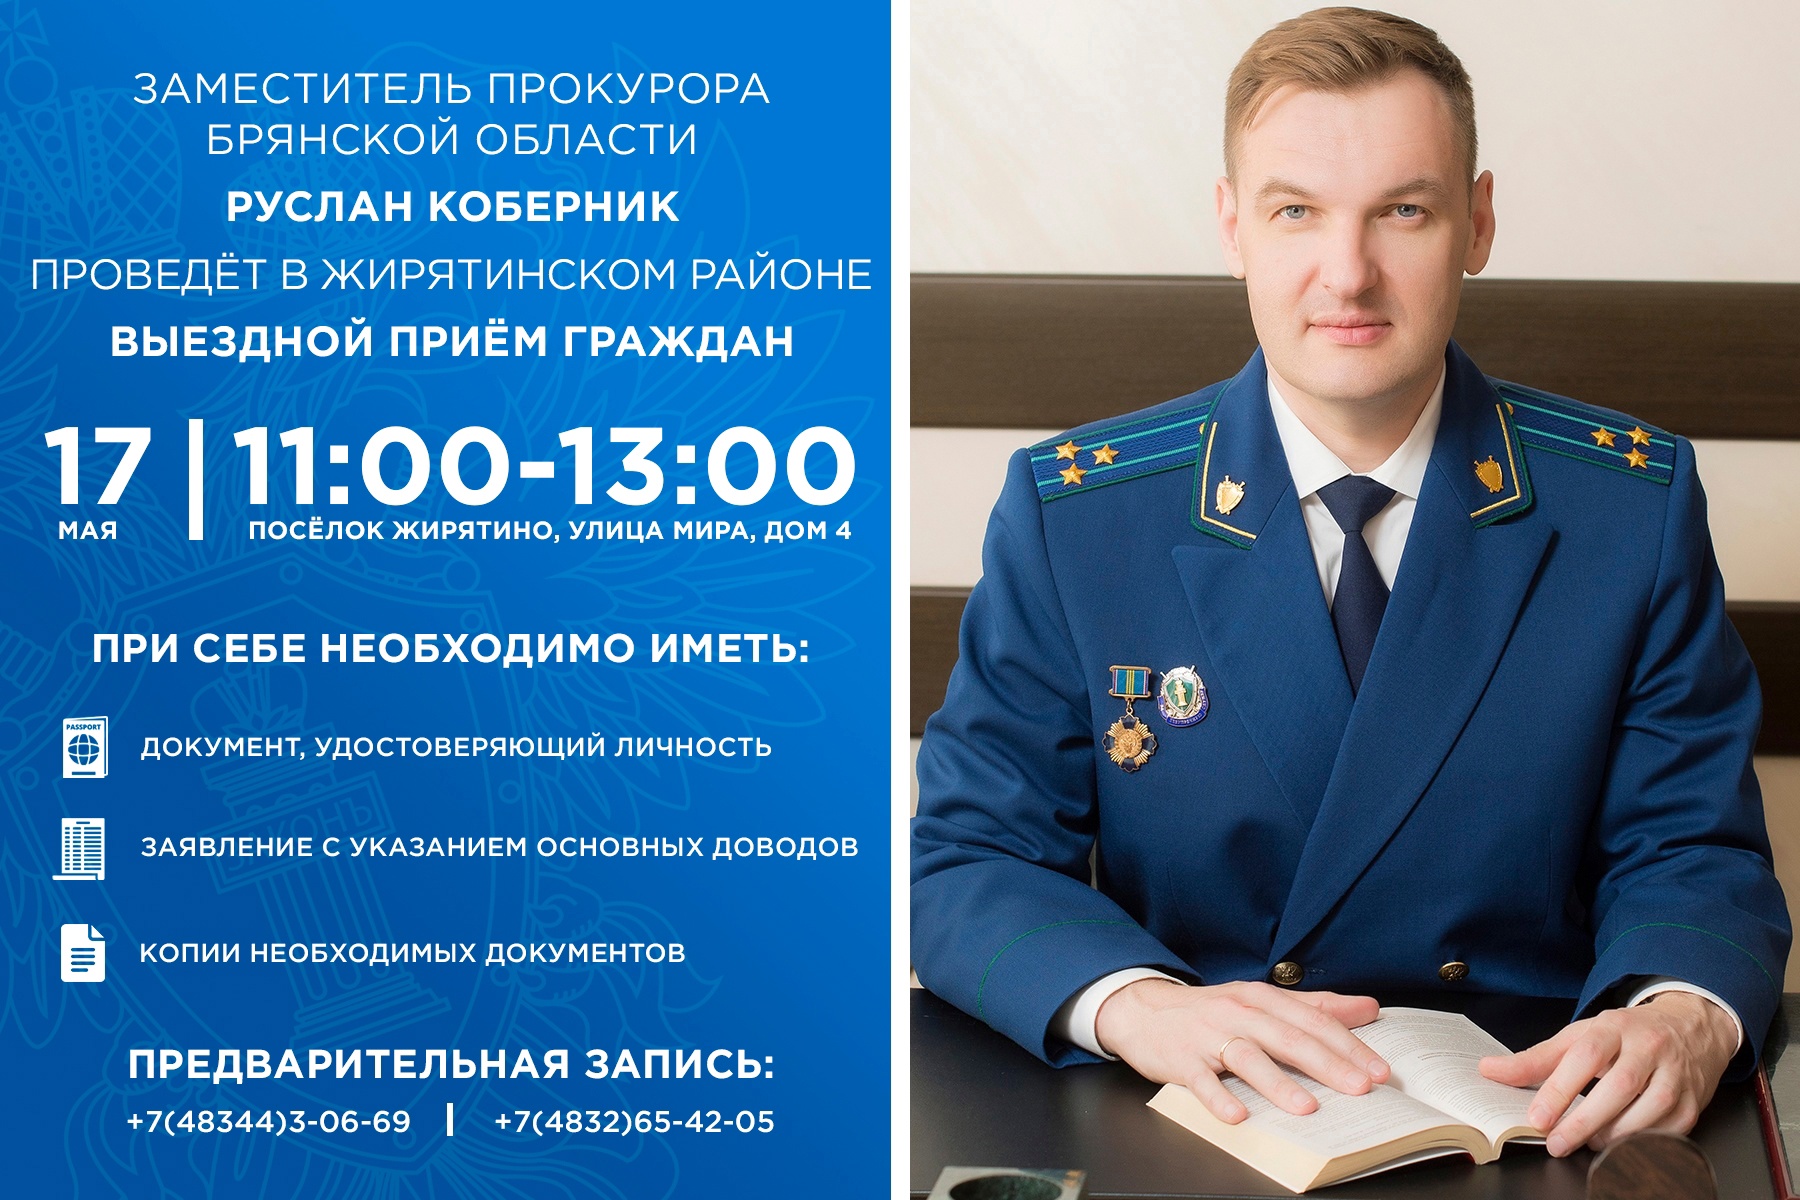 Зампрокурора Брянской области Руслан Коберник выслушает жалобы жителей Жирятино